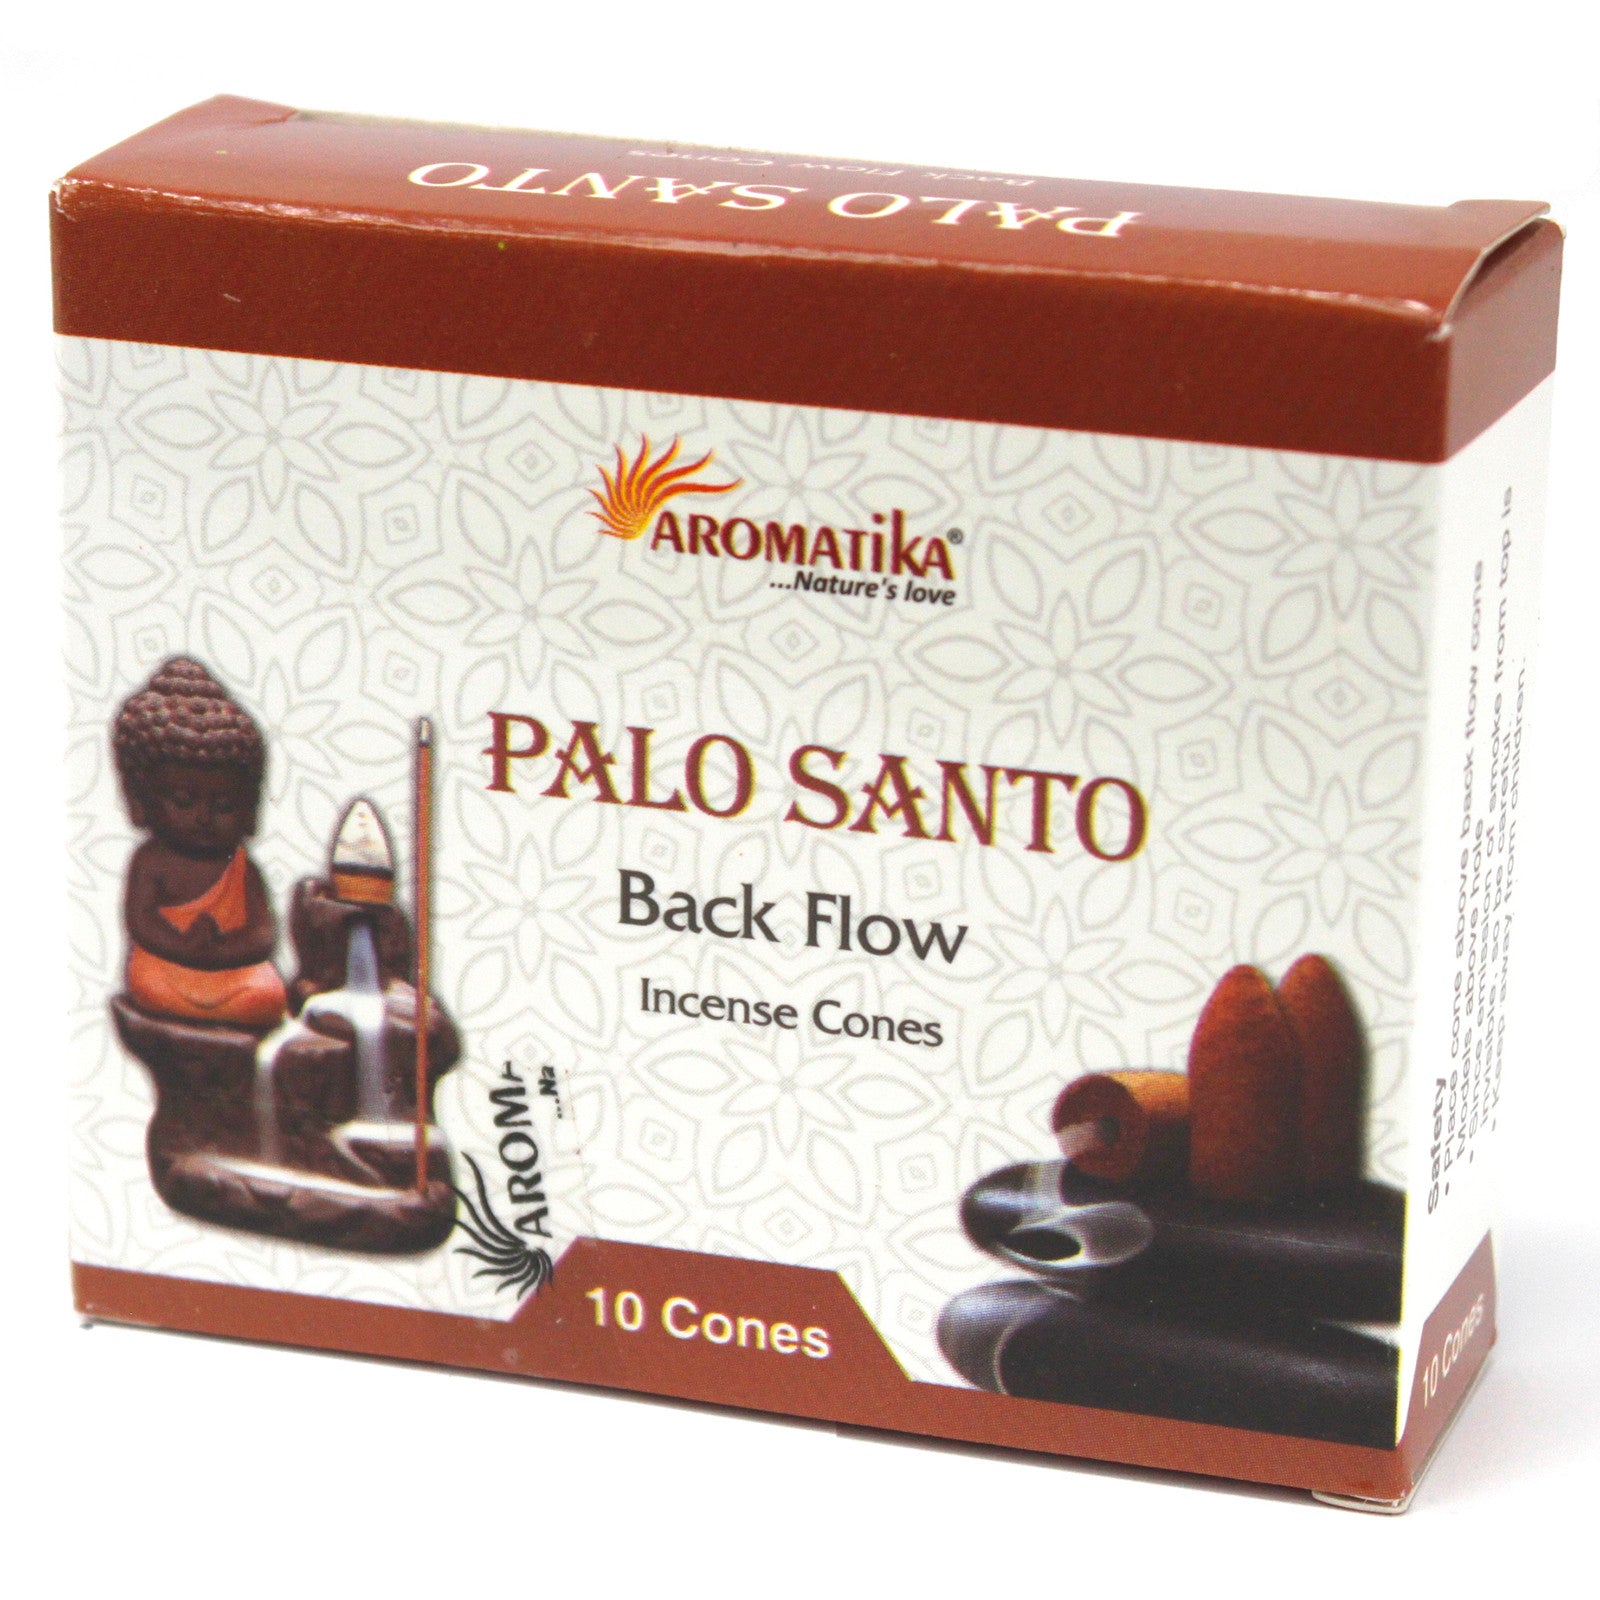 View Aromatica Backflow Incense Cones Palo Santo information